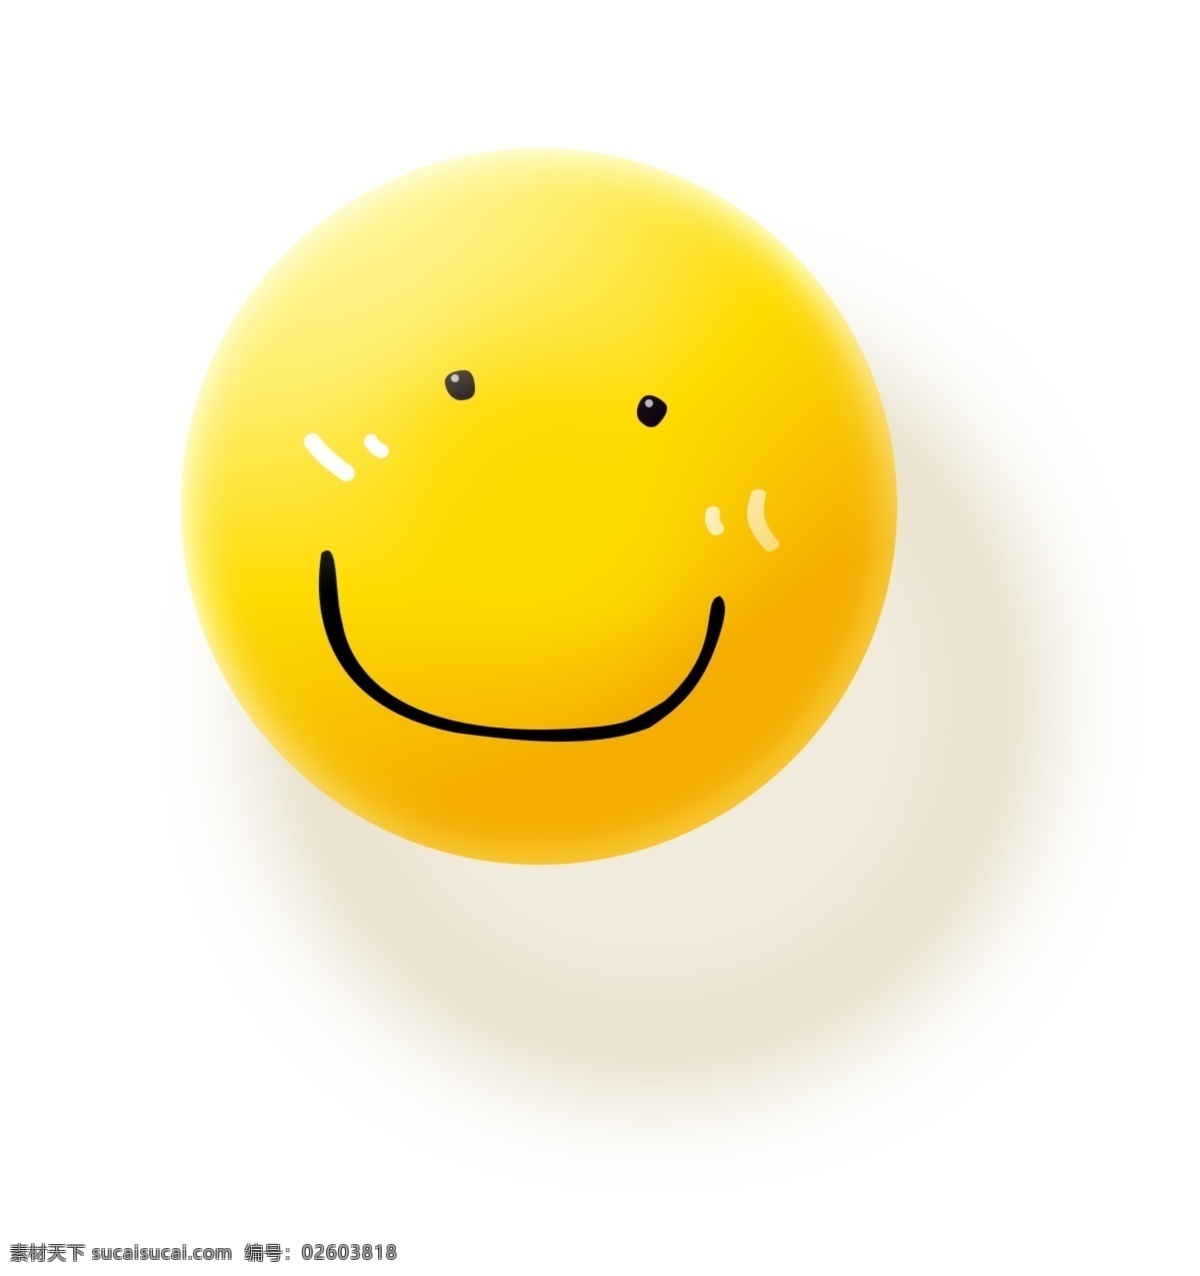 小黄球 微笑图片 个性小球 微笑表情 呆萌 可爱 黄色 立体 动漫动画